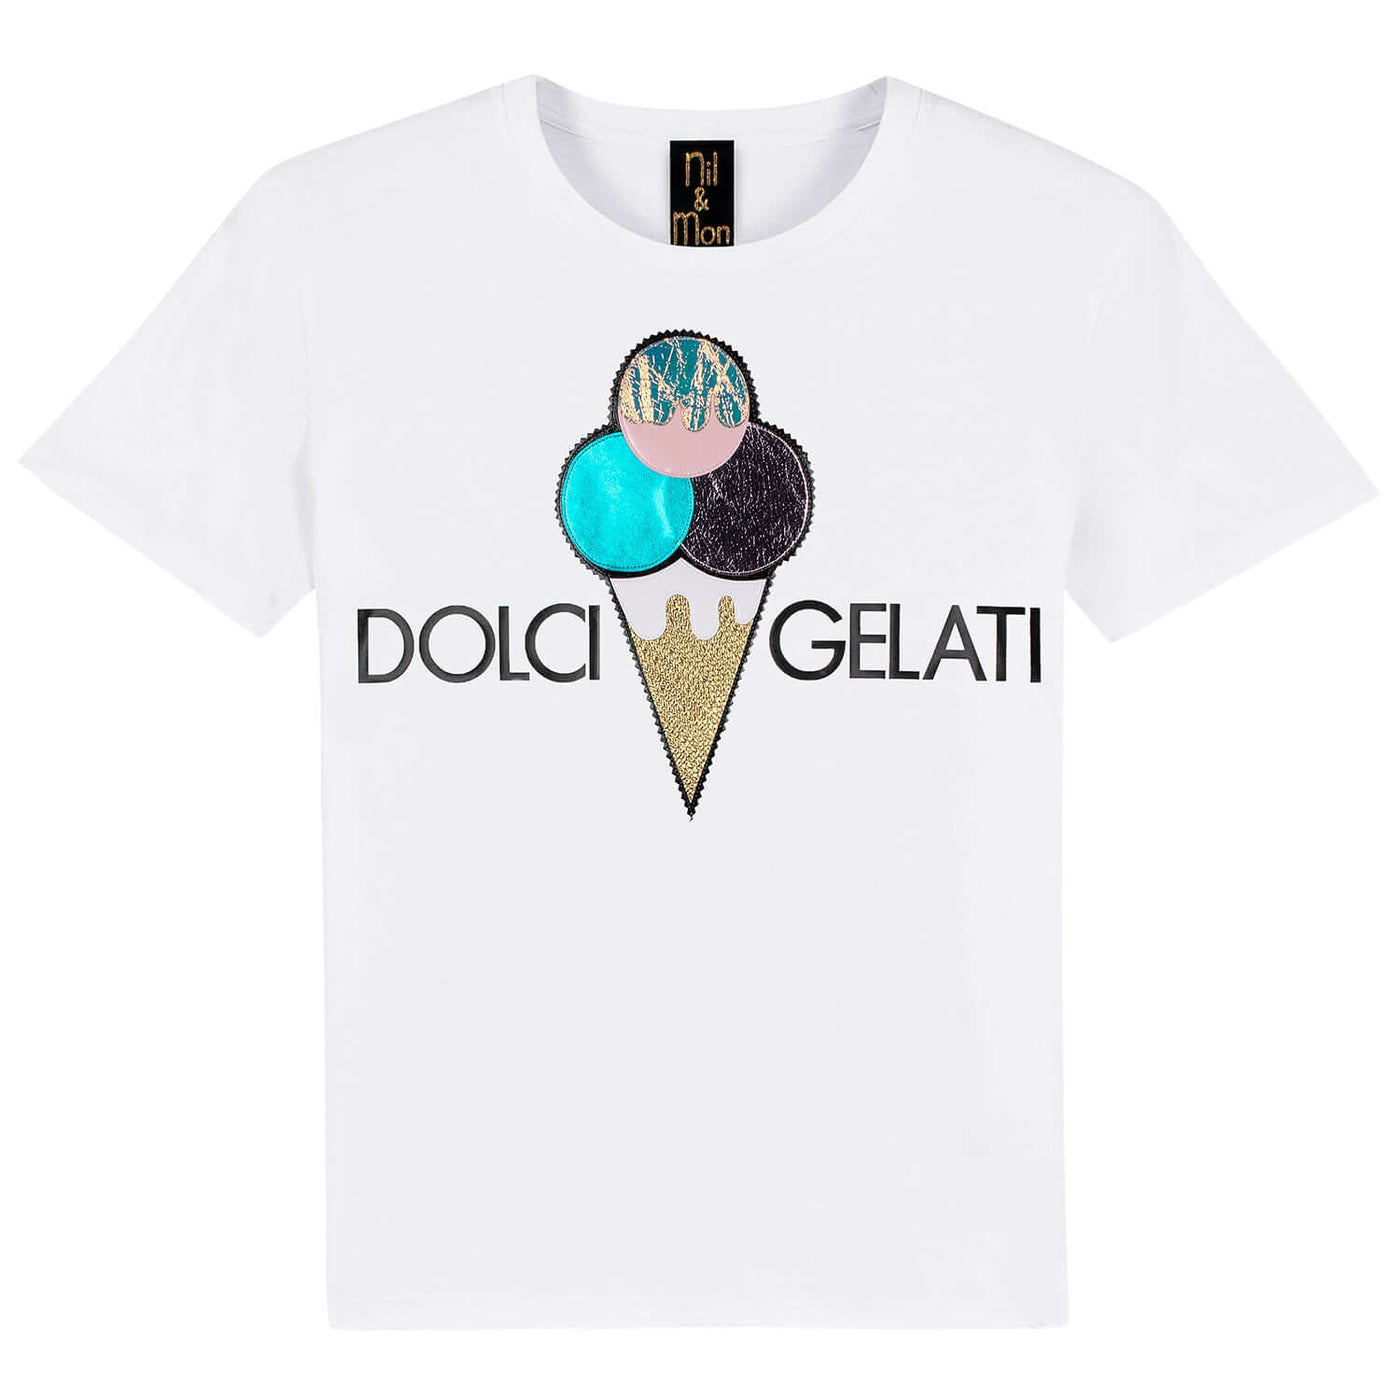 T-Shirt "Dolci Gelati" - white